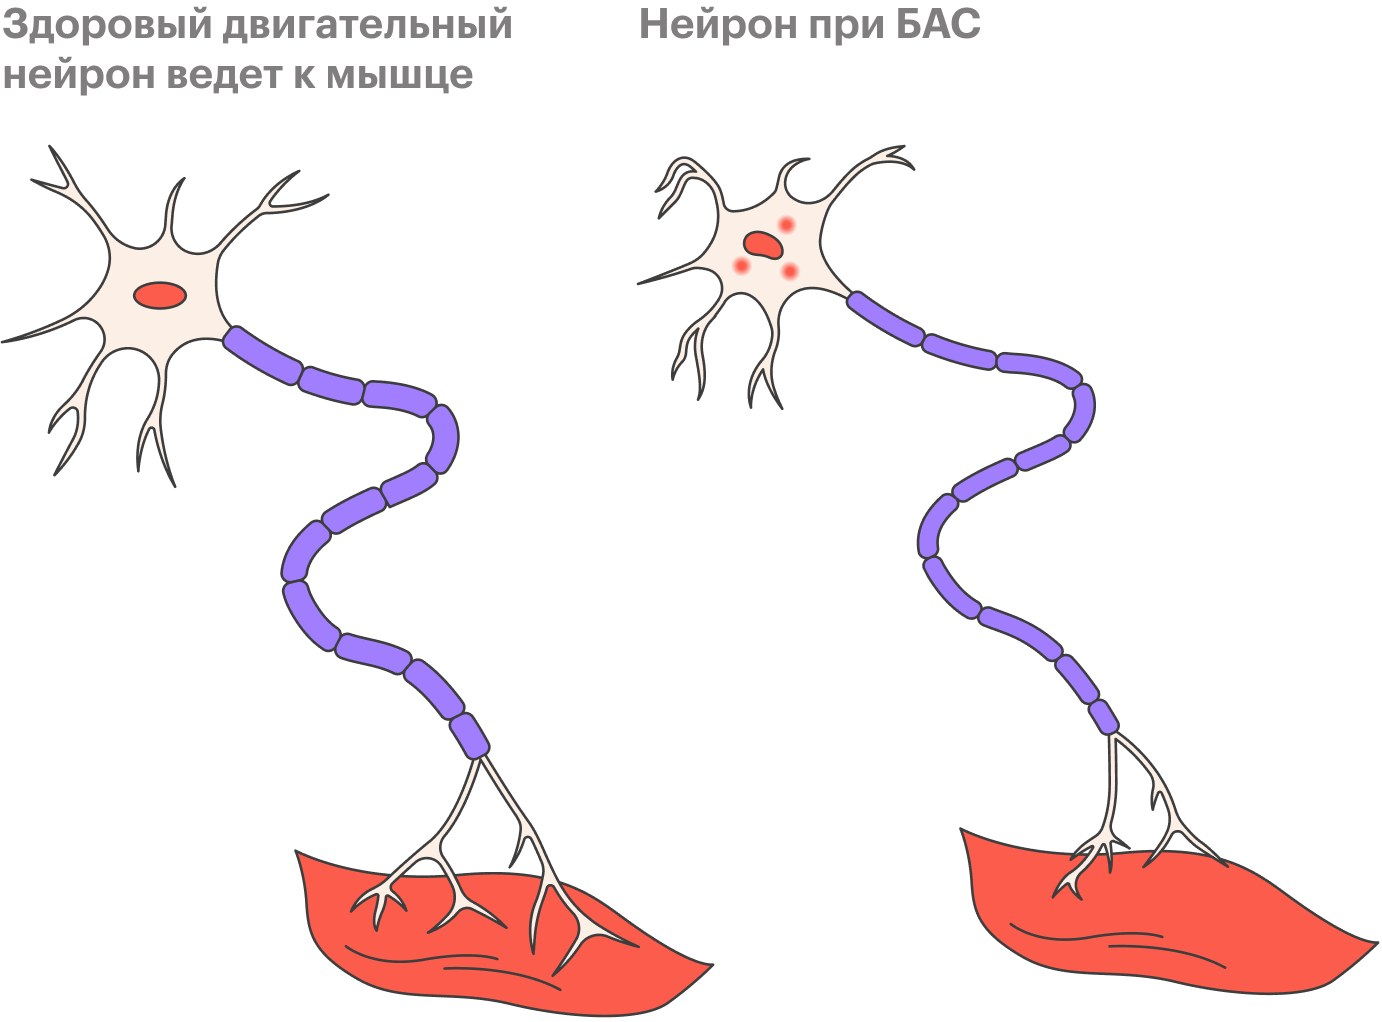 БАС поражает два типа нервных клеток: верхние и нижние мотонейроны, которые своими импульсами приводят мышцы в движение. Сначала нейроны ослабевают, затем начинают подергиваться, а после истощаются и отмирают. Именно поэтому на начальных стадиях болезни человеку может быть сложно застегнуть пуговицу, написать что⁠-⁠то или открыть дверь ключом. Потом на разных участках его тела подергиваются мышцы. А затем человек перестает говорить, есть, ходить и дышать